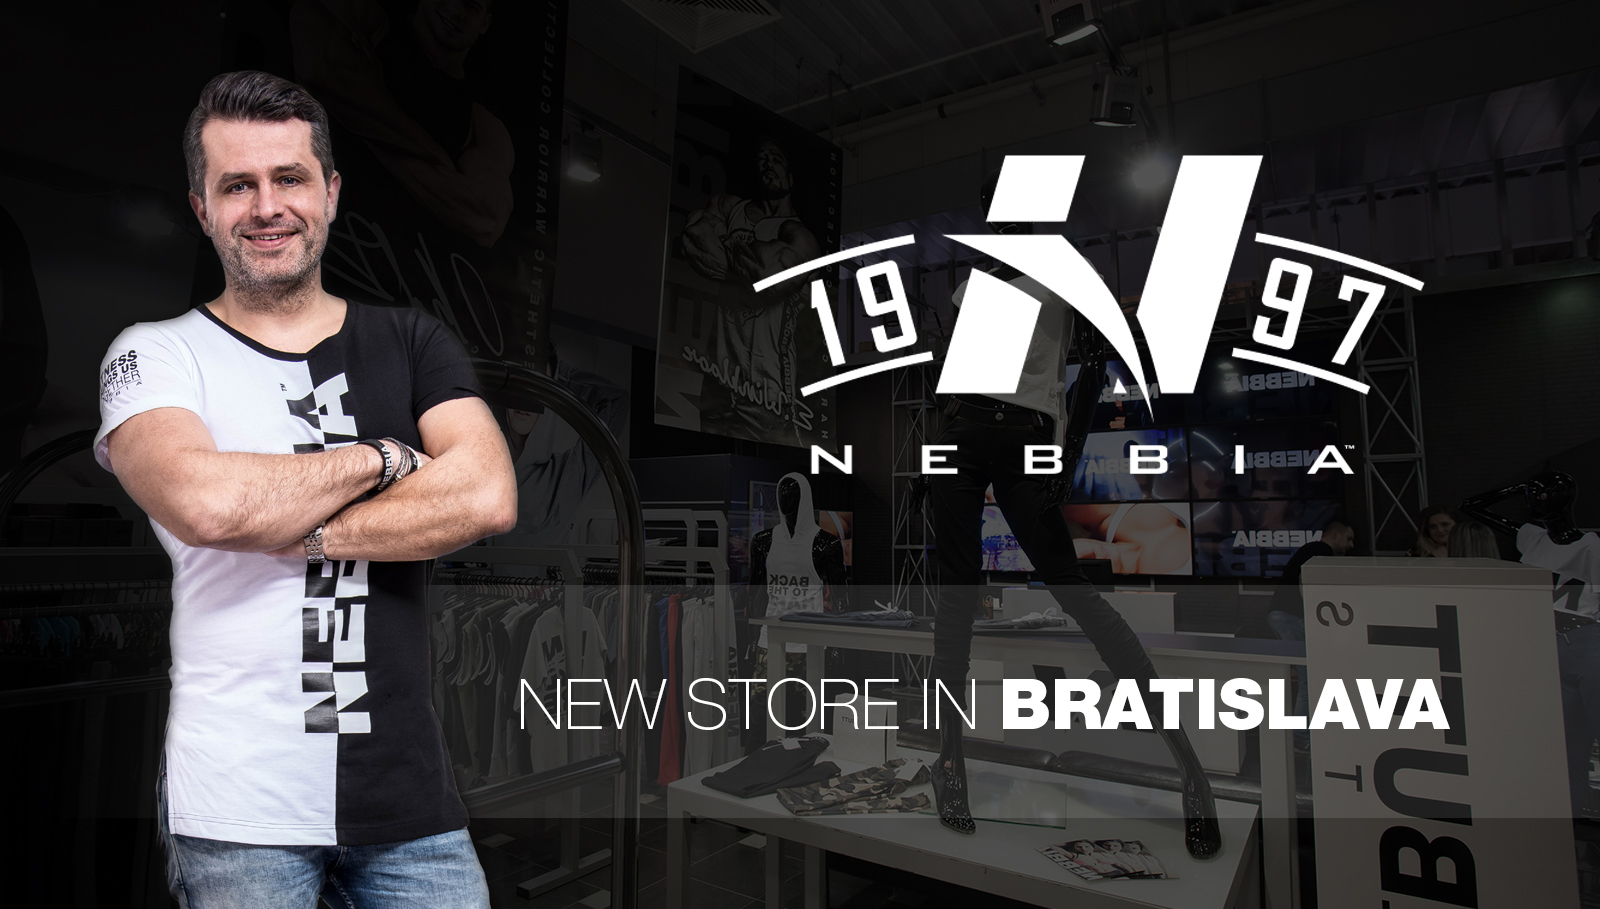 ¡Nueva tienda NEBBIA en Bratislava!